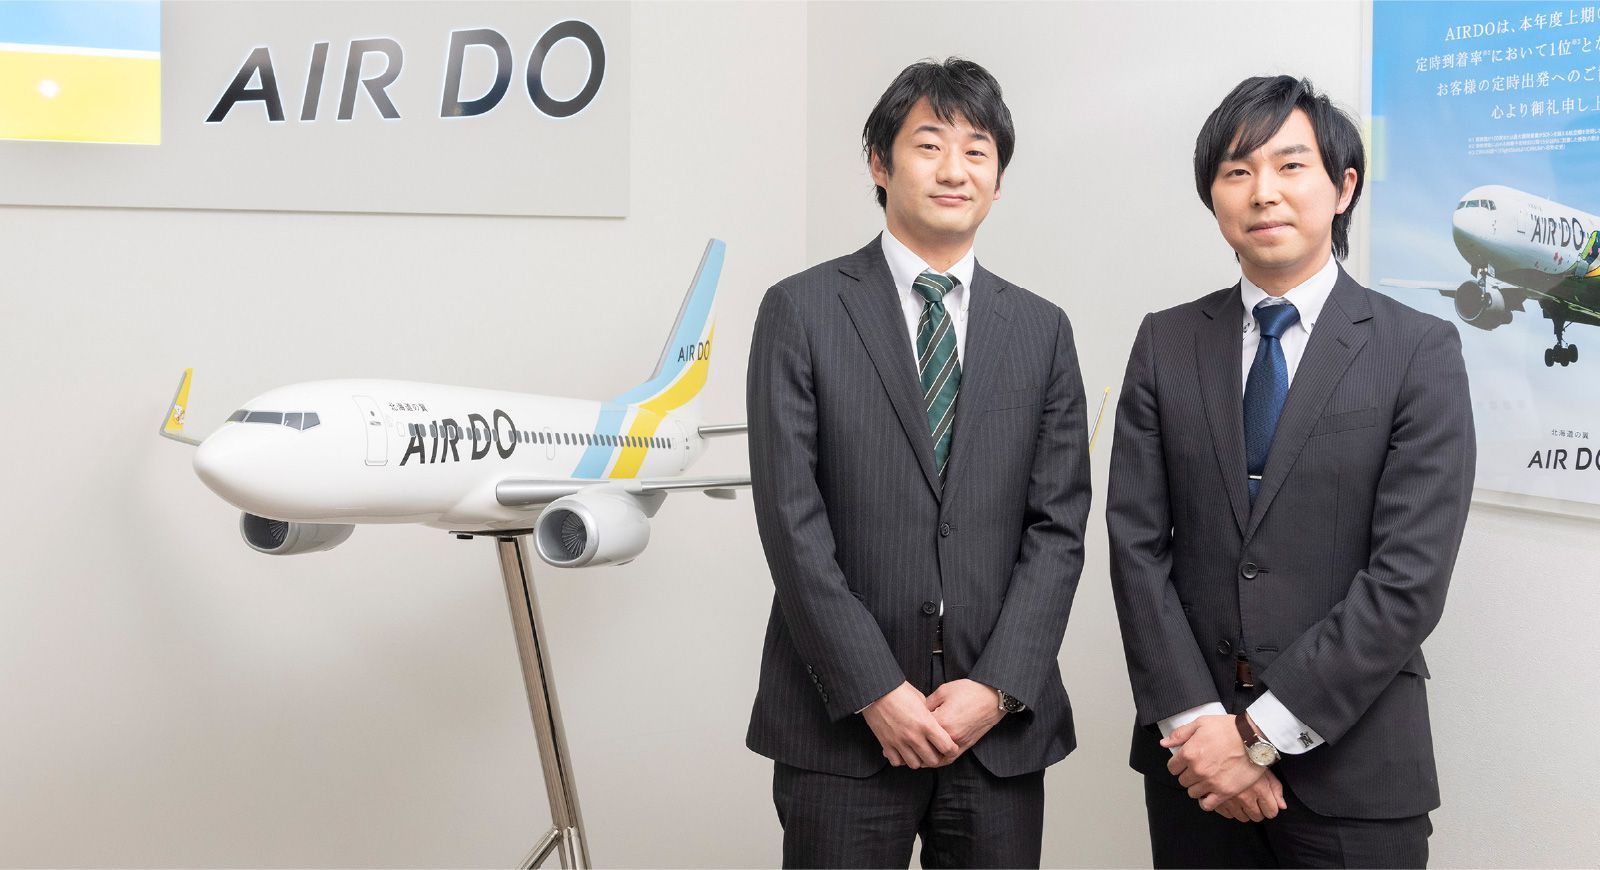 プロジェクトストーリー 挑戦を続ける先輩たち 国際線チャーター便 採用情報 Airdoについて 北海道発着の飛行機予約 空席照会 Airdo エア ドゥ